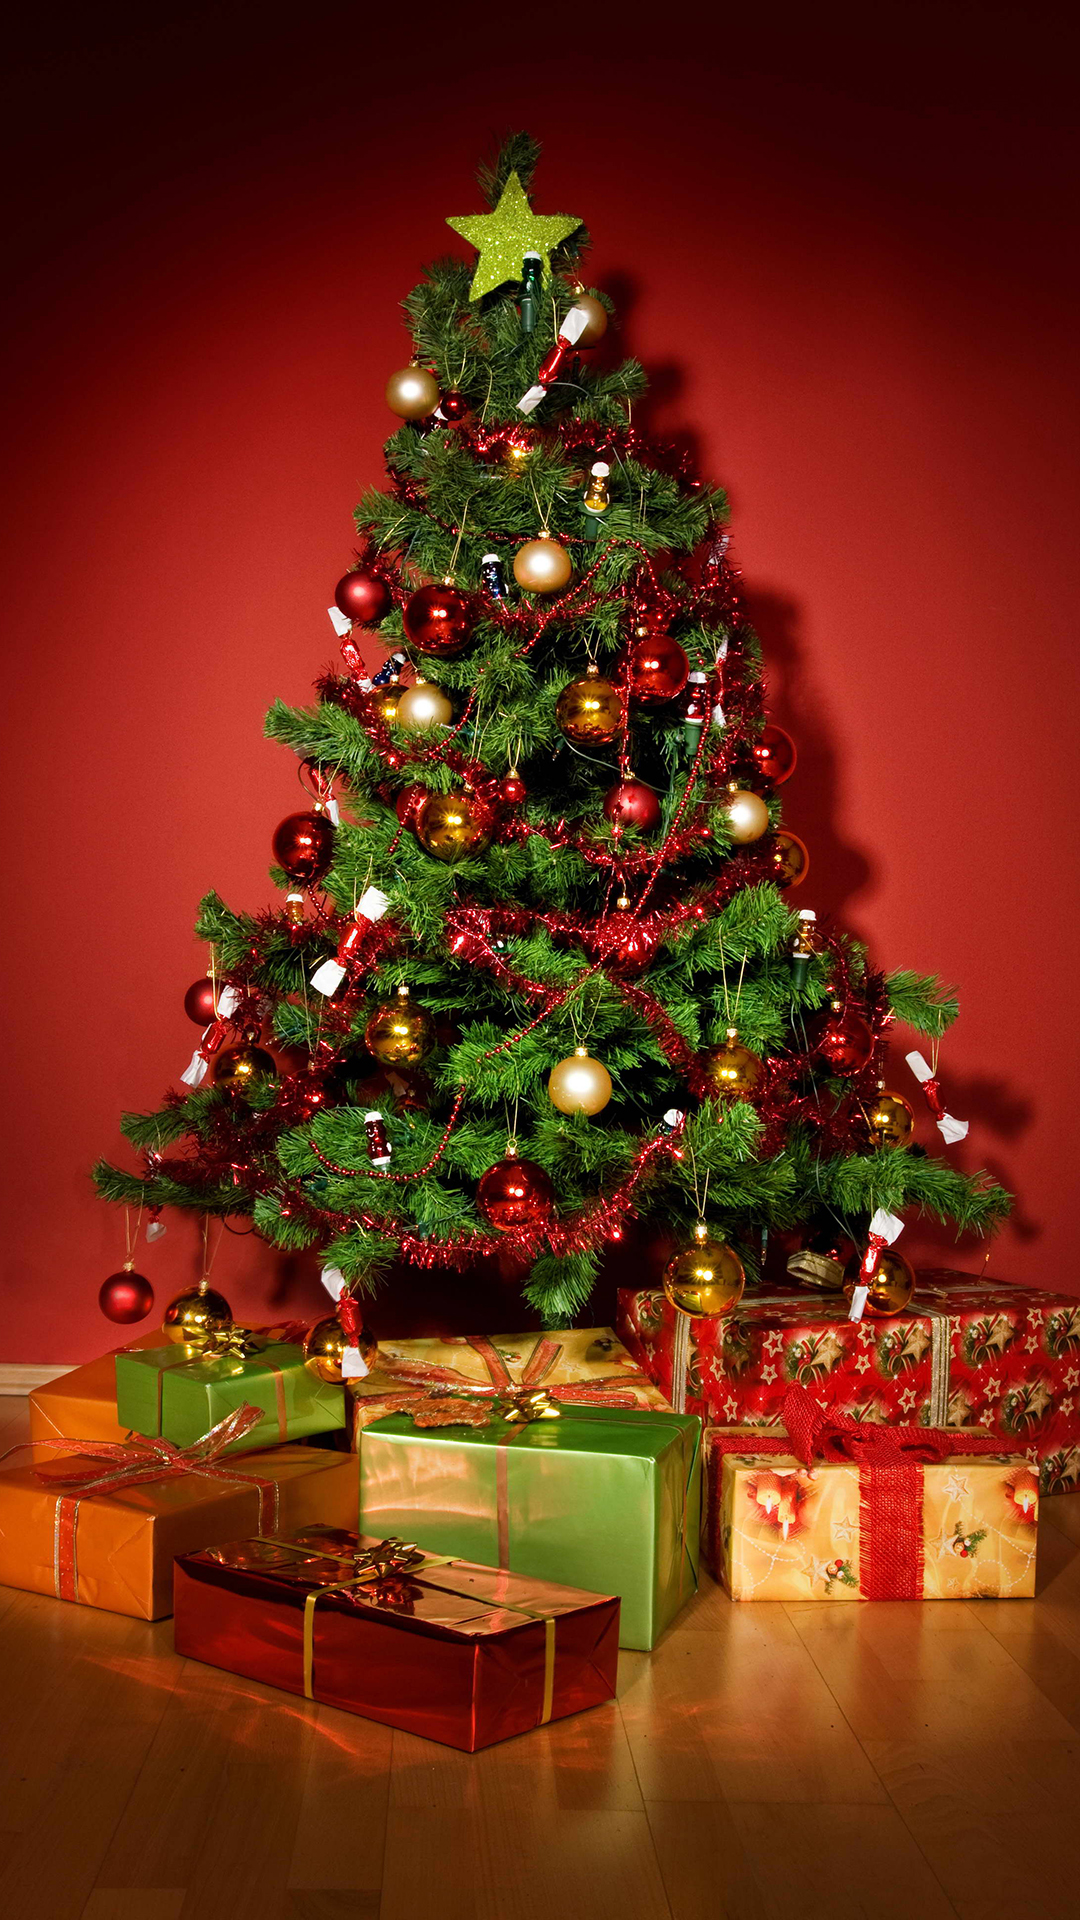 papel tapiz de árbol de navidad,árbol de navidad,decoración navideña,navidad,árbol,decoración navideña